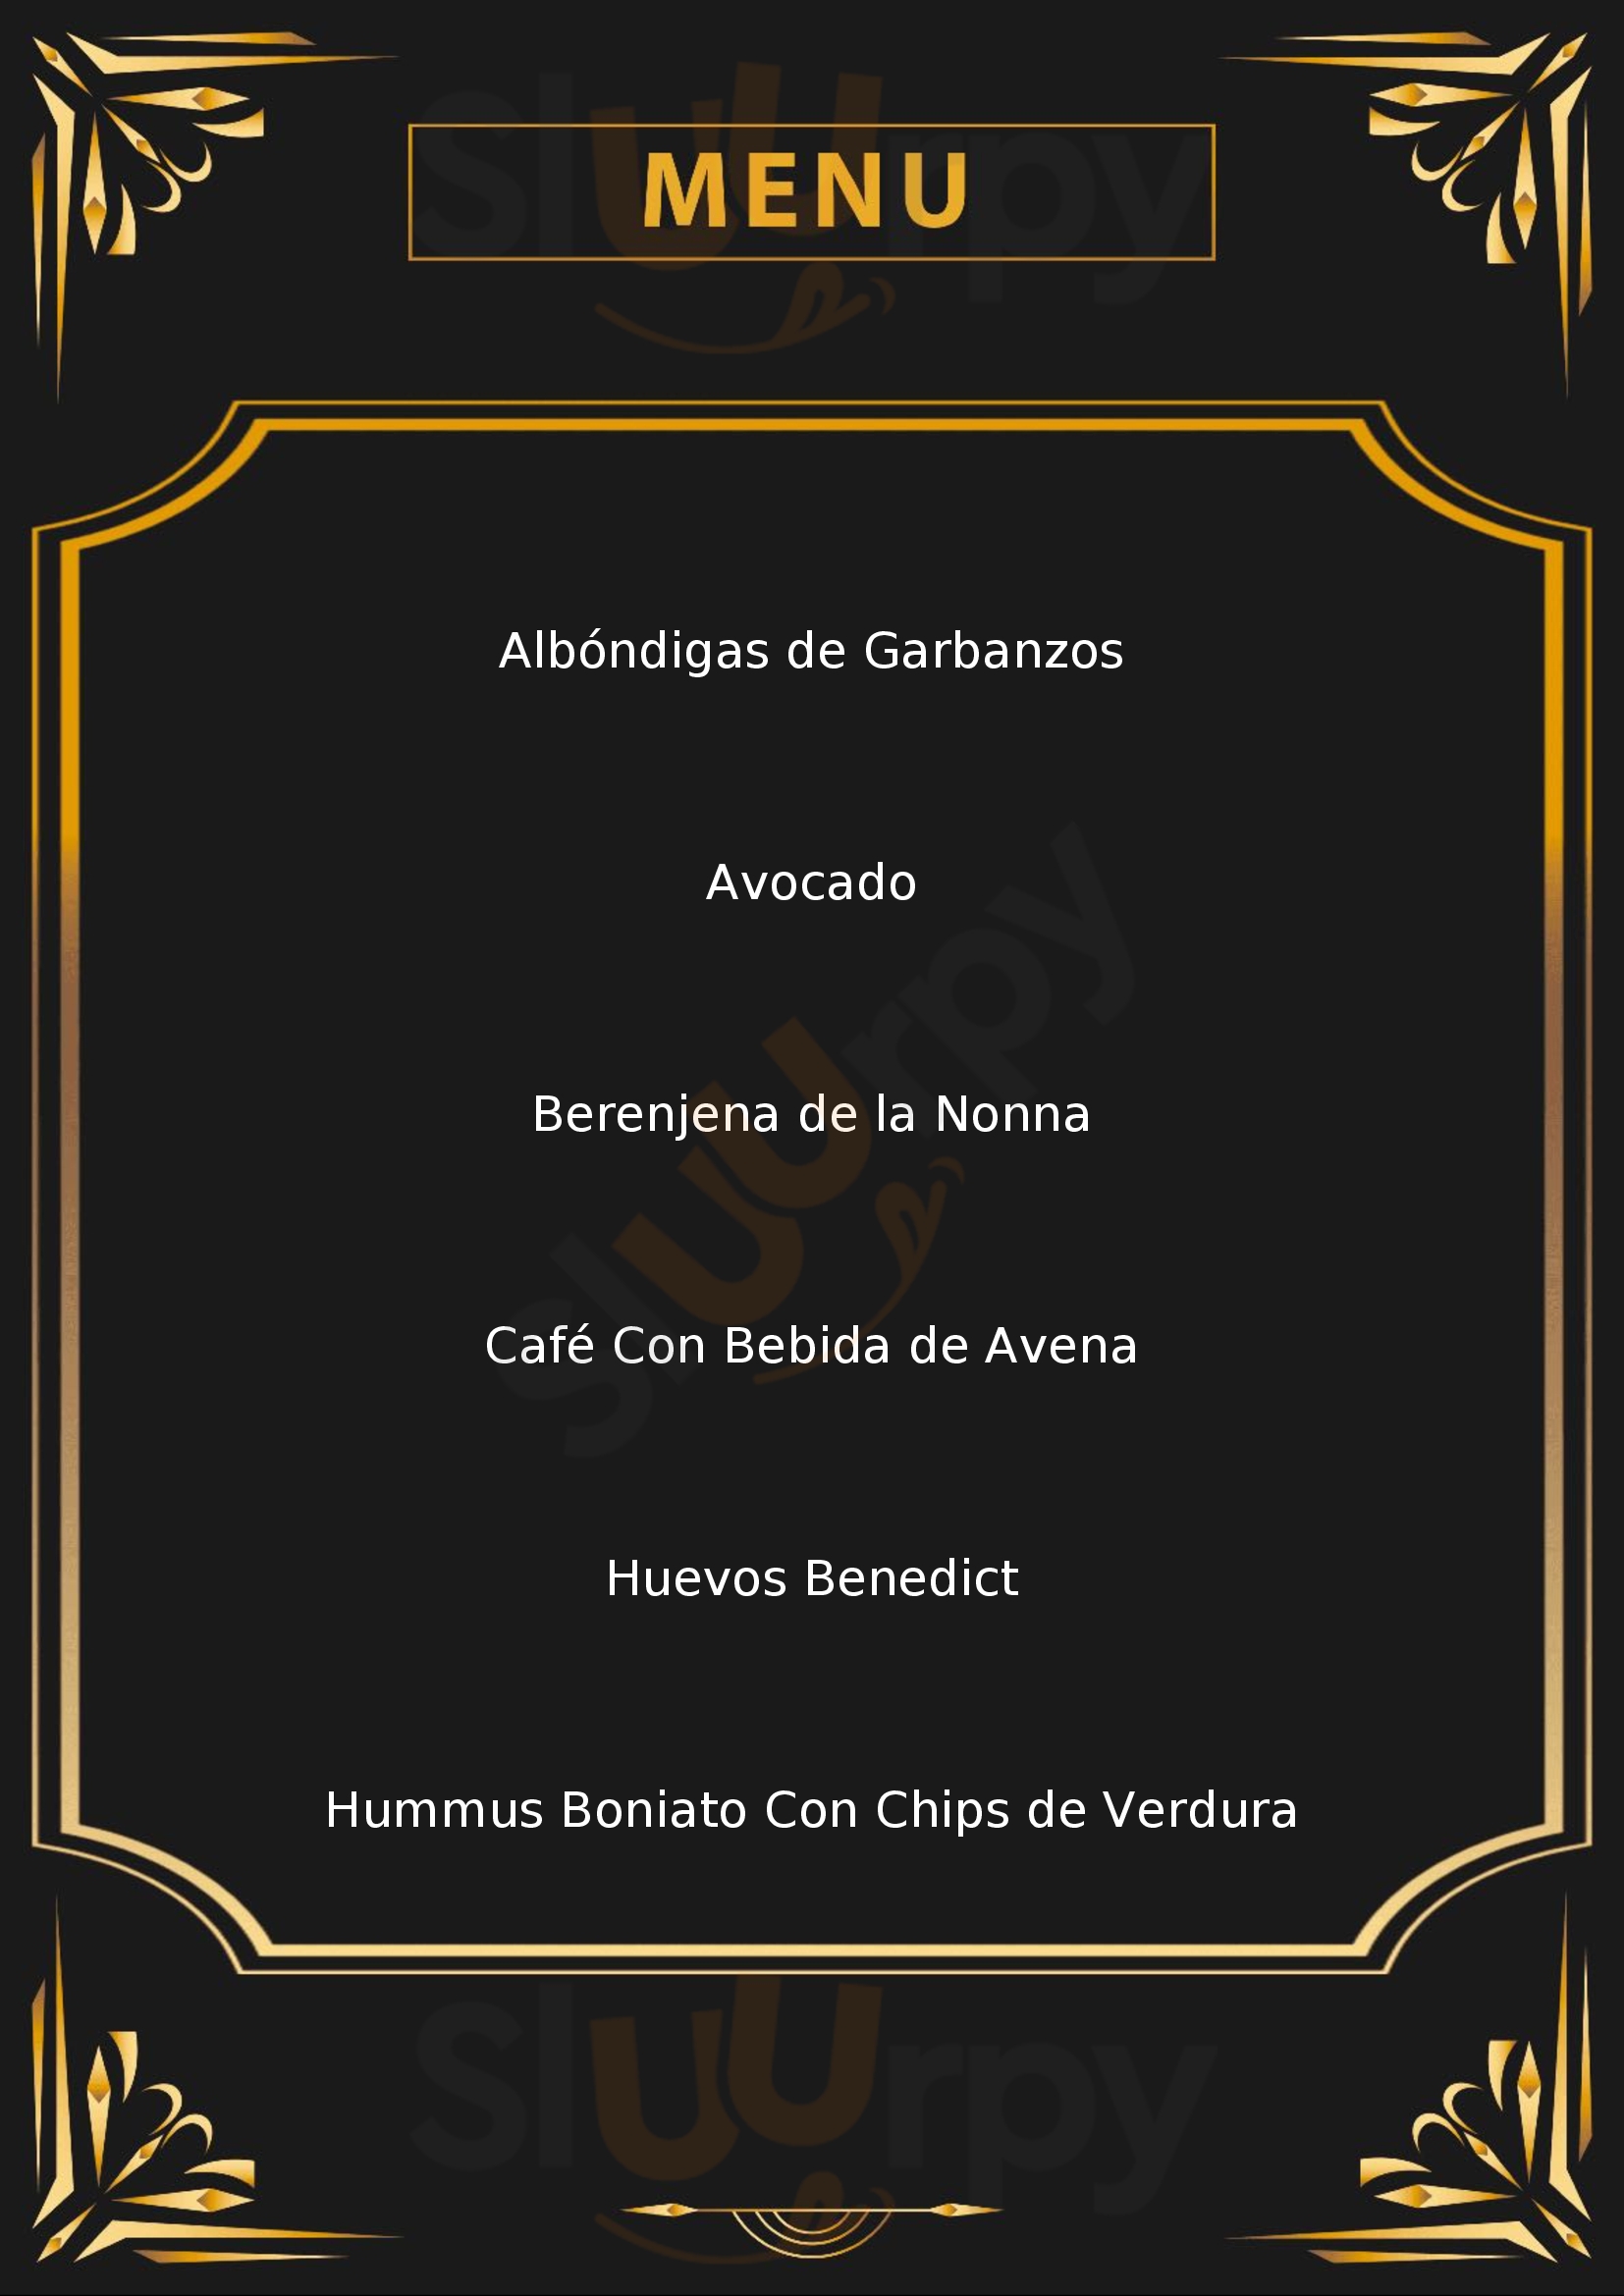 Chia Restaurante Madrid Menu - 1